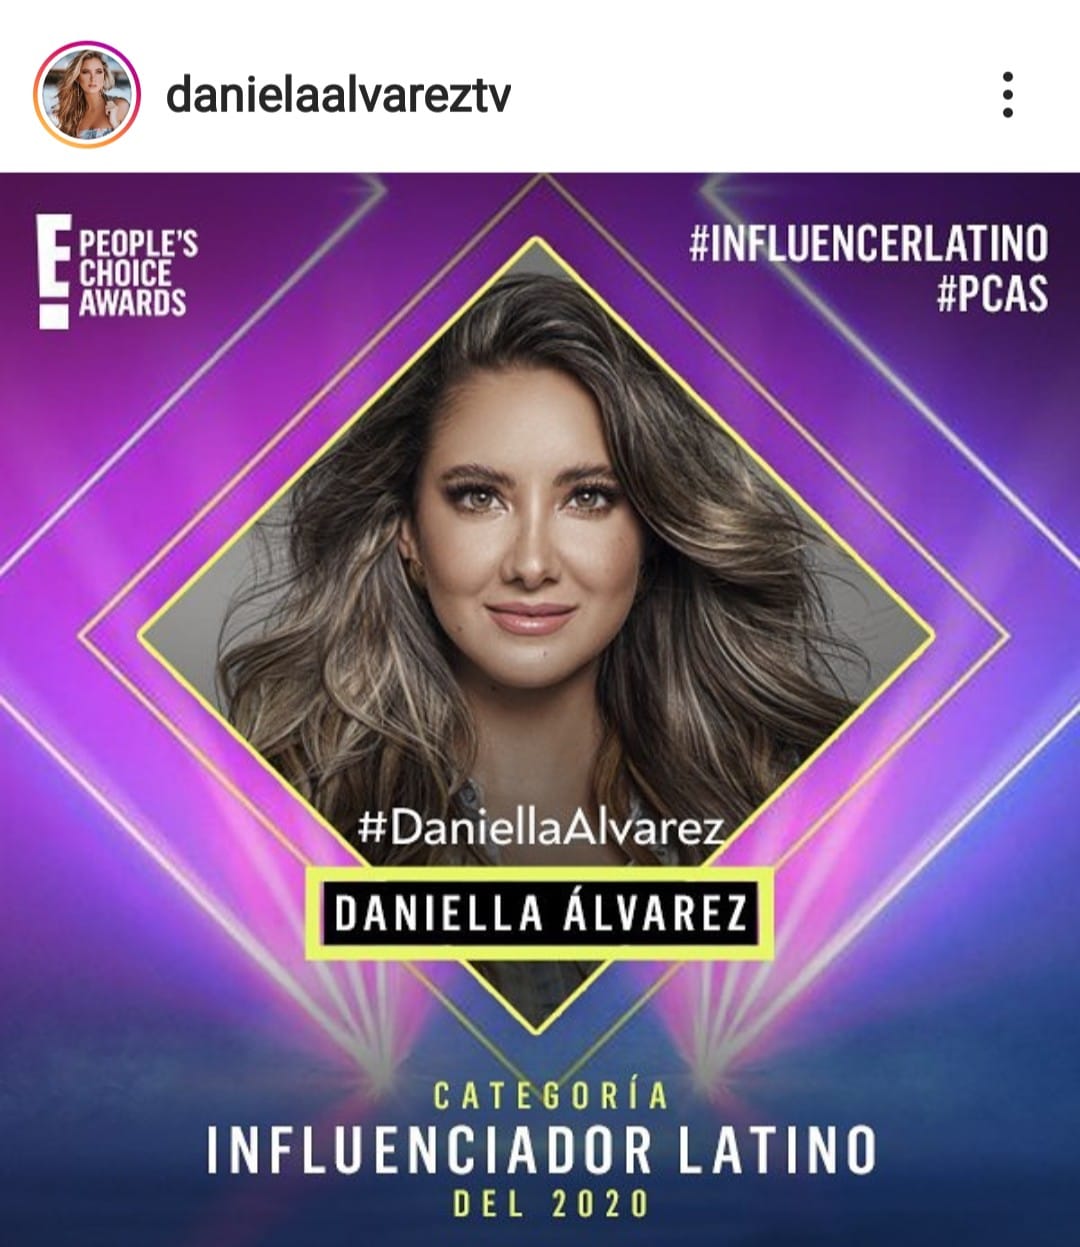 La colombiana Daniela Álvarez fue nominada a los premios E People’s Choice Awards como influencer latino del año